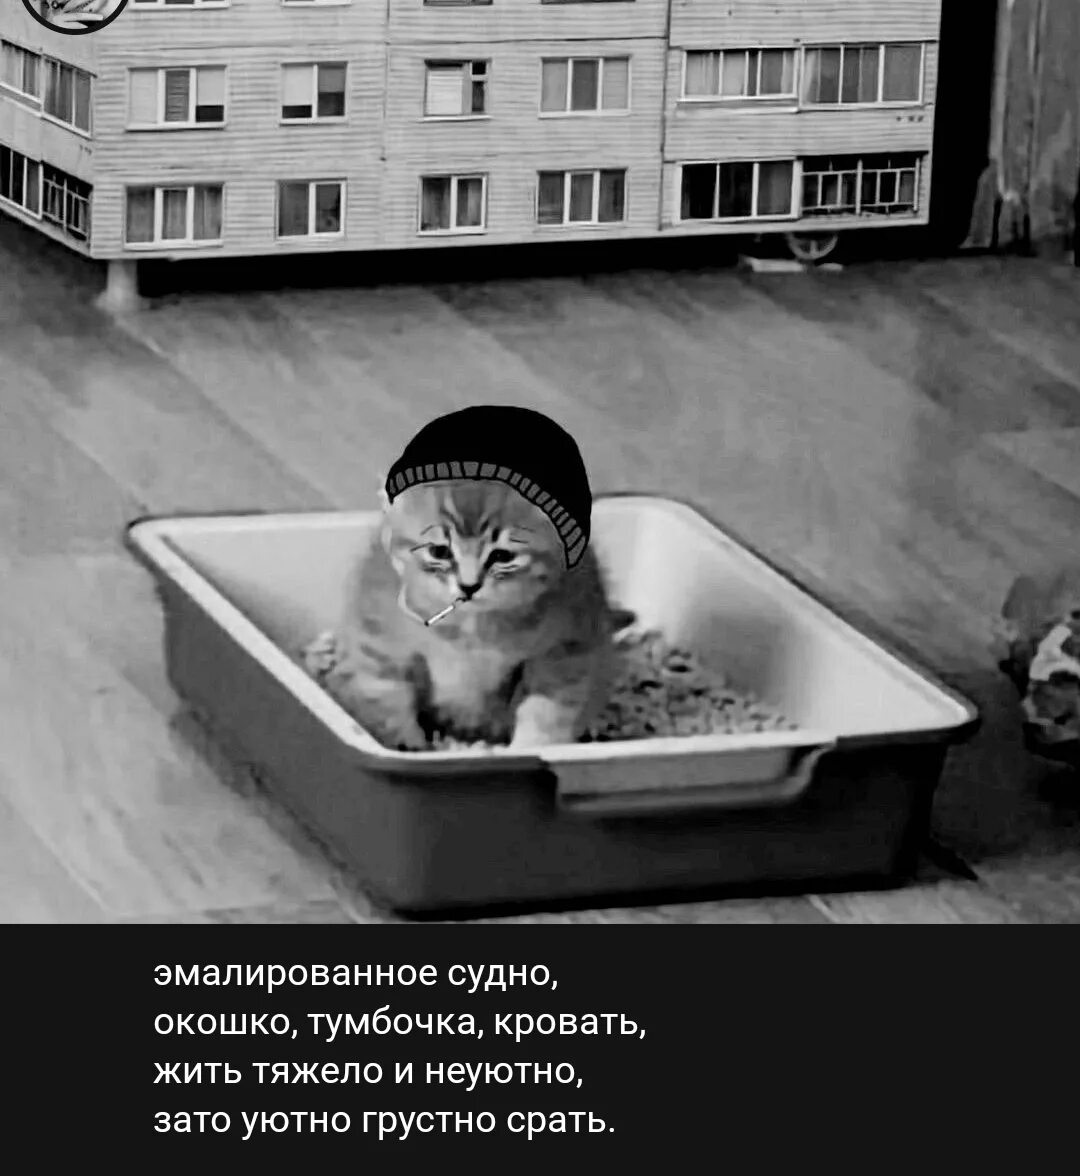 Песни жить тяжело и неуютно. Кот в лотке Мем. Лоток для котят. Котенок ДУМЕР. Мемы про лоток.